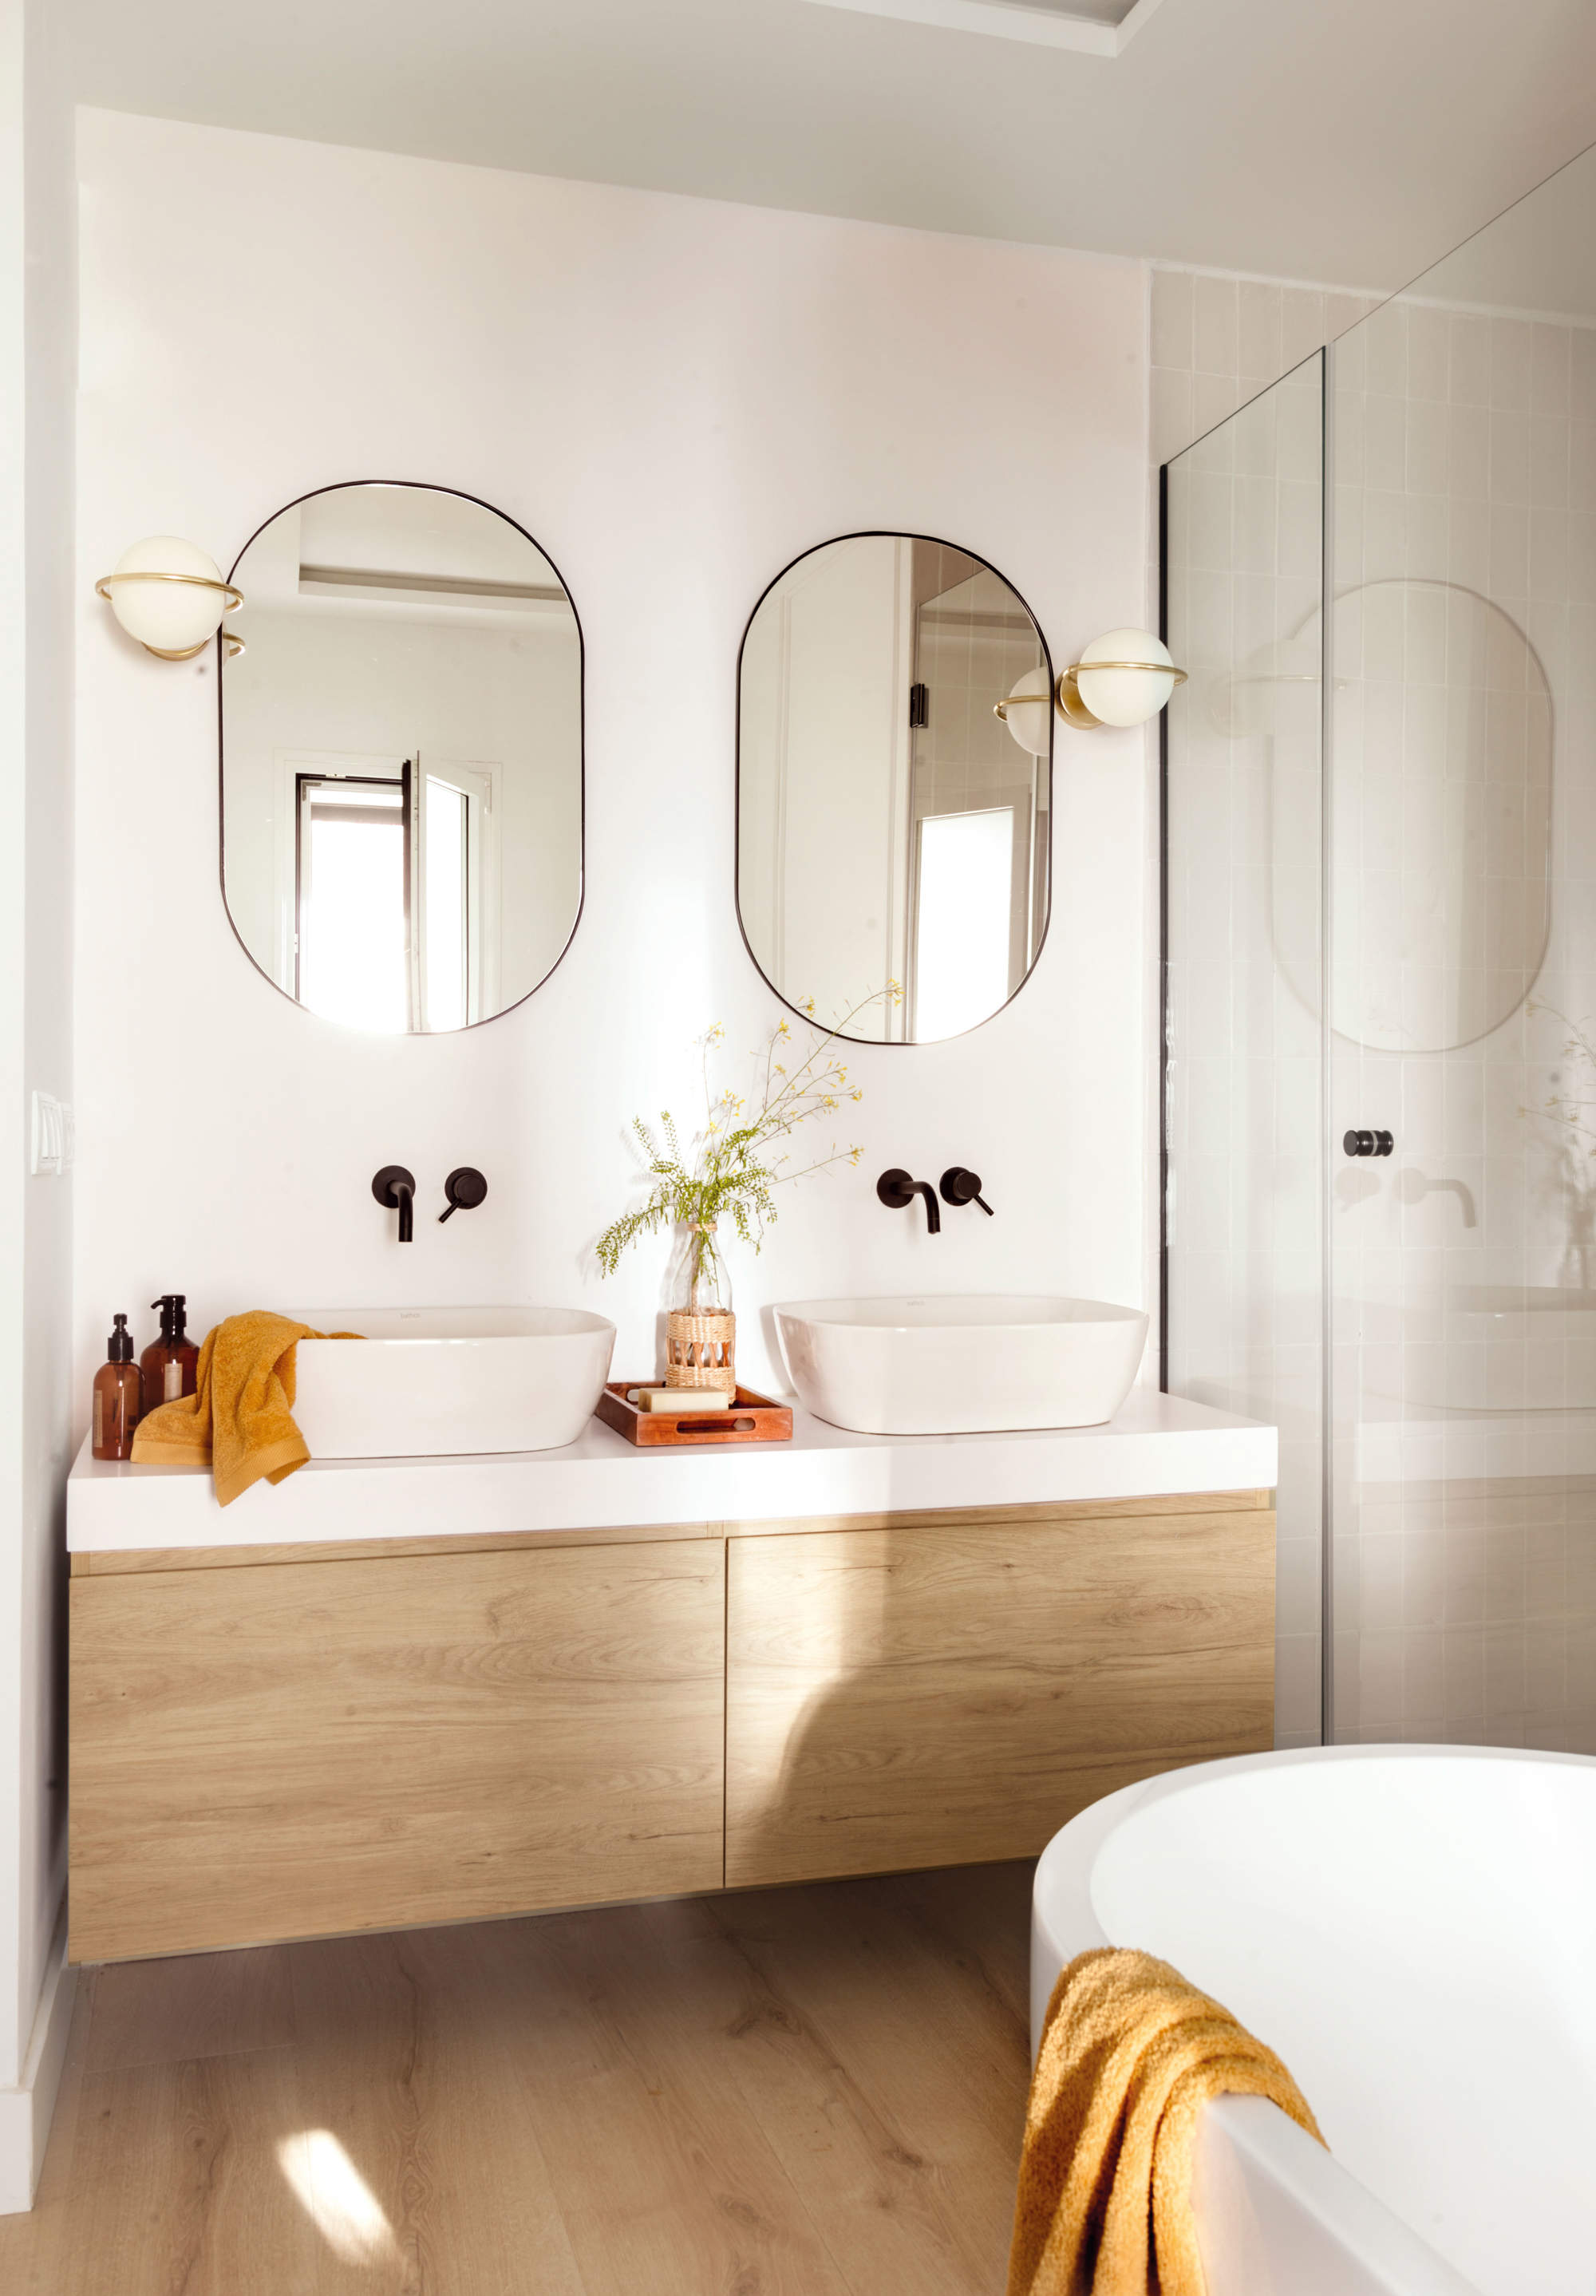 Baño con mueble volado y espejos ovalados.